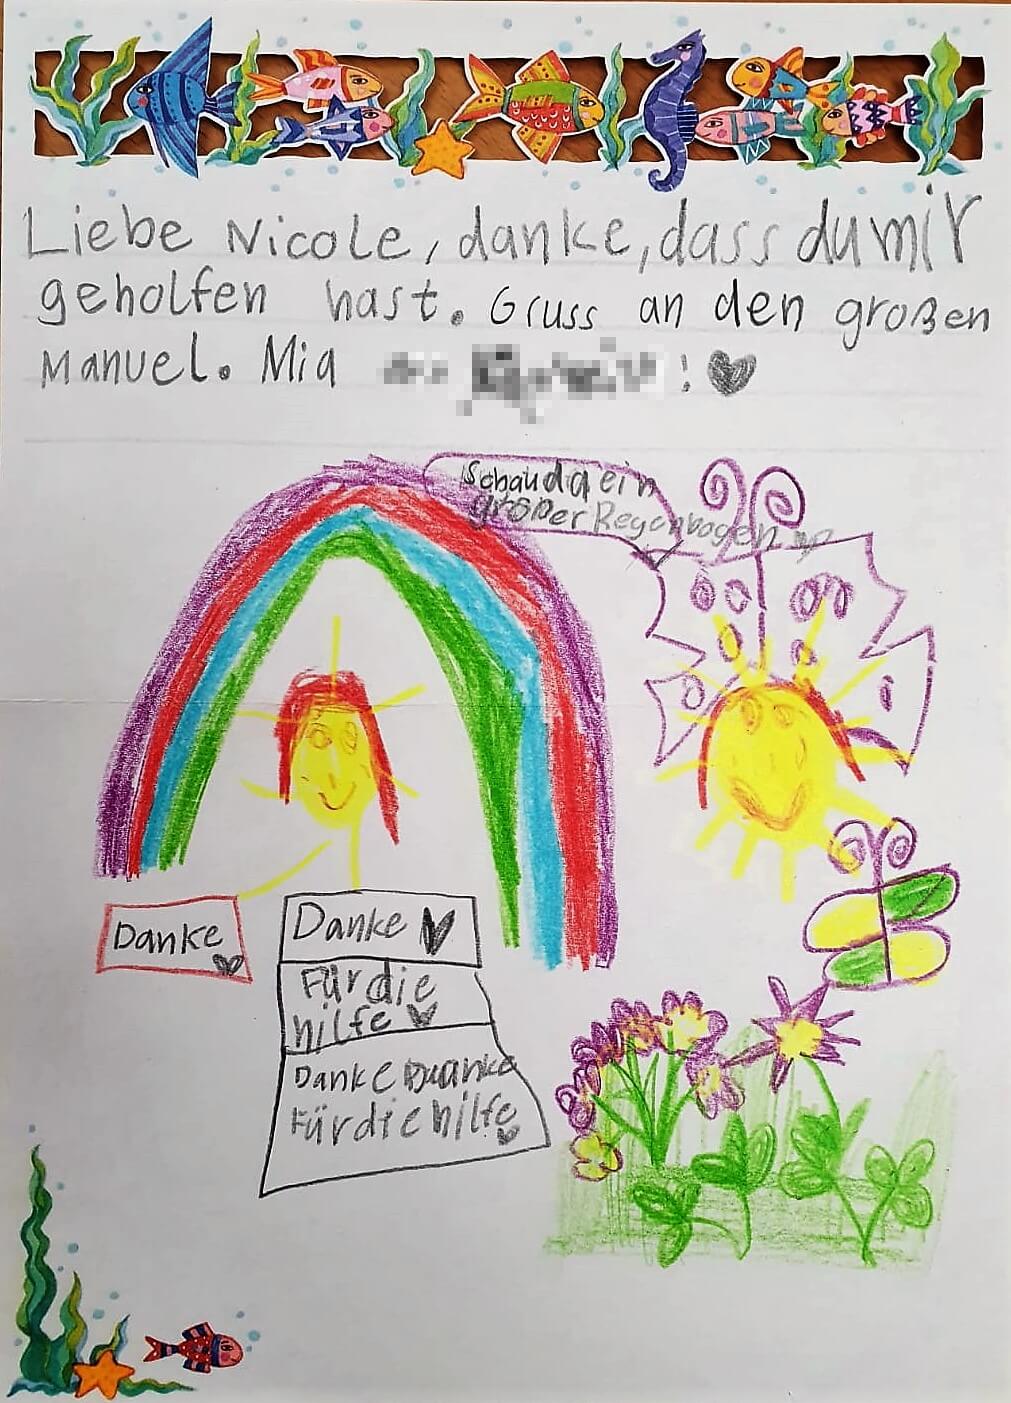 Mit diesem selbst gemalten Bild hat sich die kleine Mia bei ihren Rettern Nicole und Manuel für deren Hilfe bedankt. (Foto: Nicole Riegler)